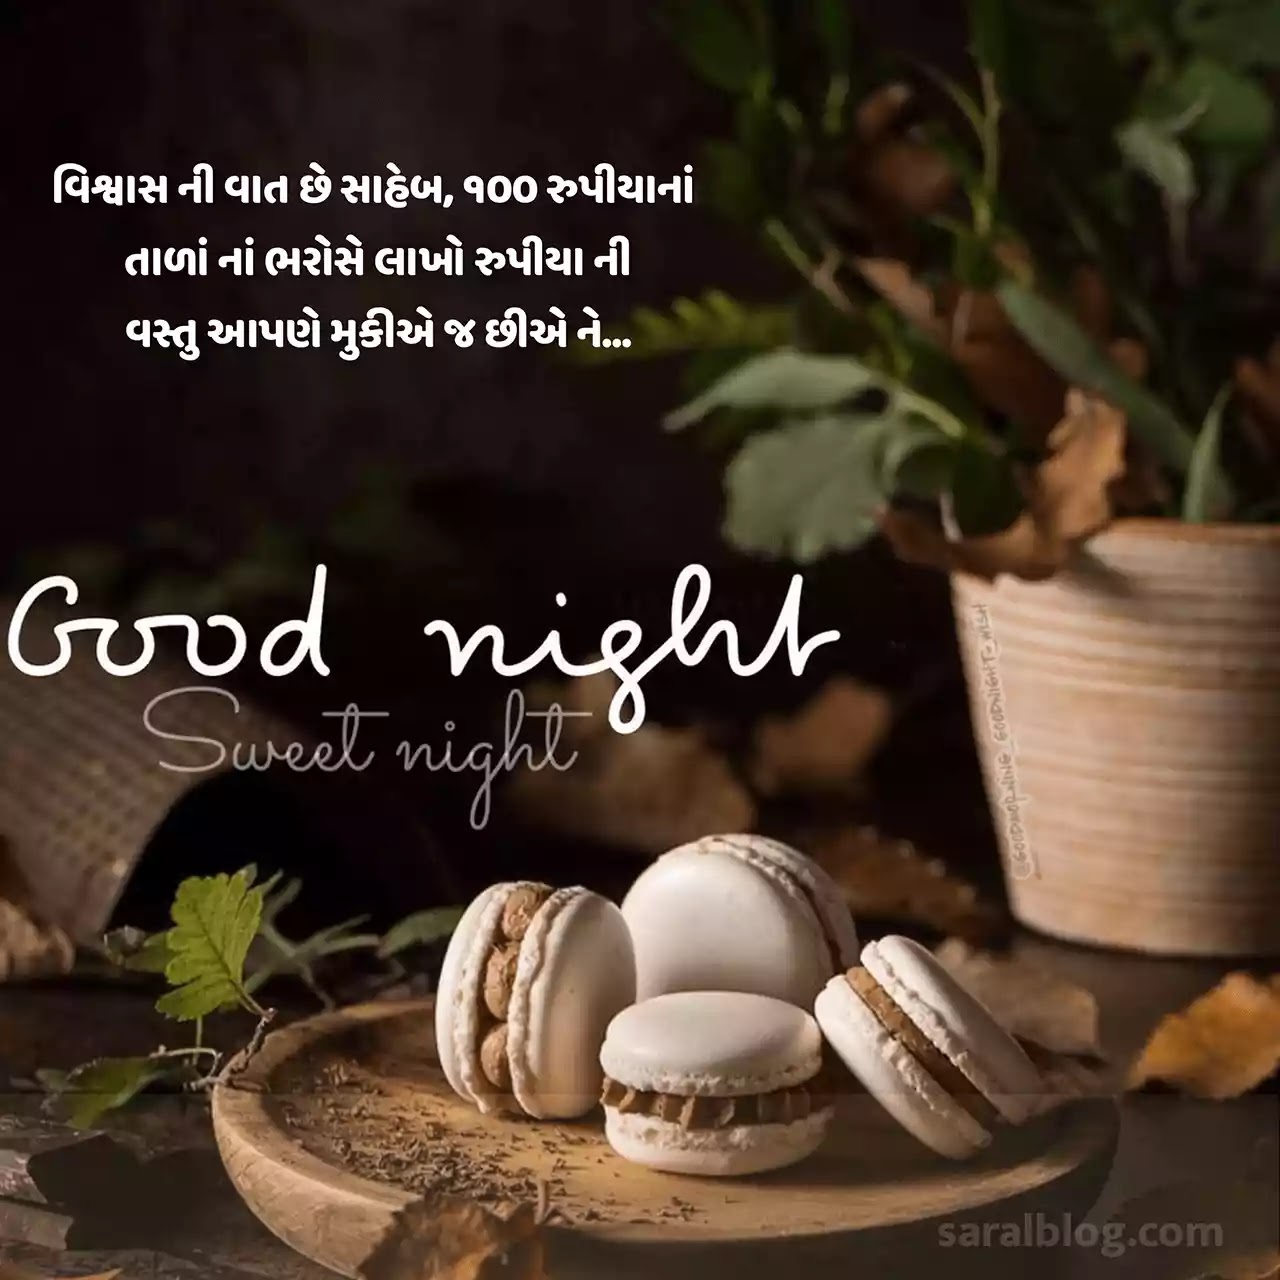 આ પોસ્ટમાં ખાસ તમારા માટે Latest Gujarati Good Night Quotes, Shayari, Suvichar, Text SMS, and Images લઇ આવ્યા છીએ. શુભ રાત્રી સંદેશ sms પણ છે.